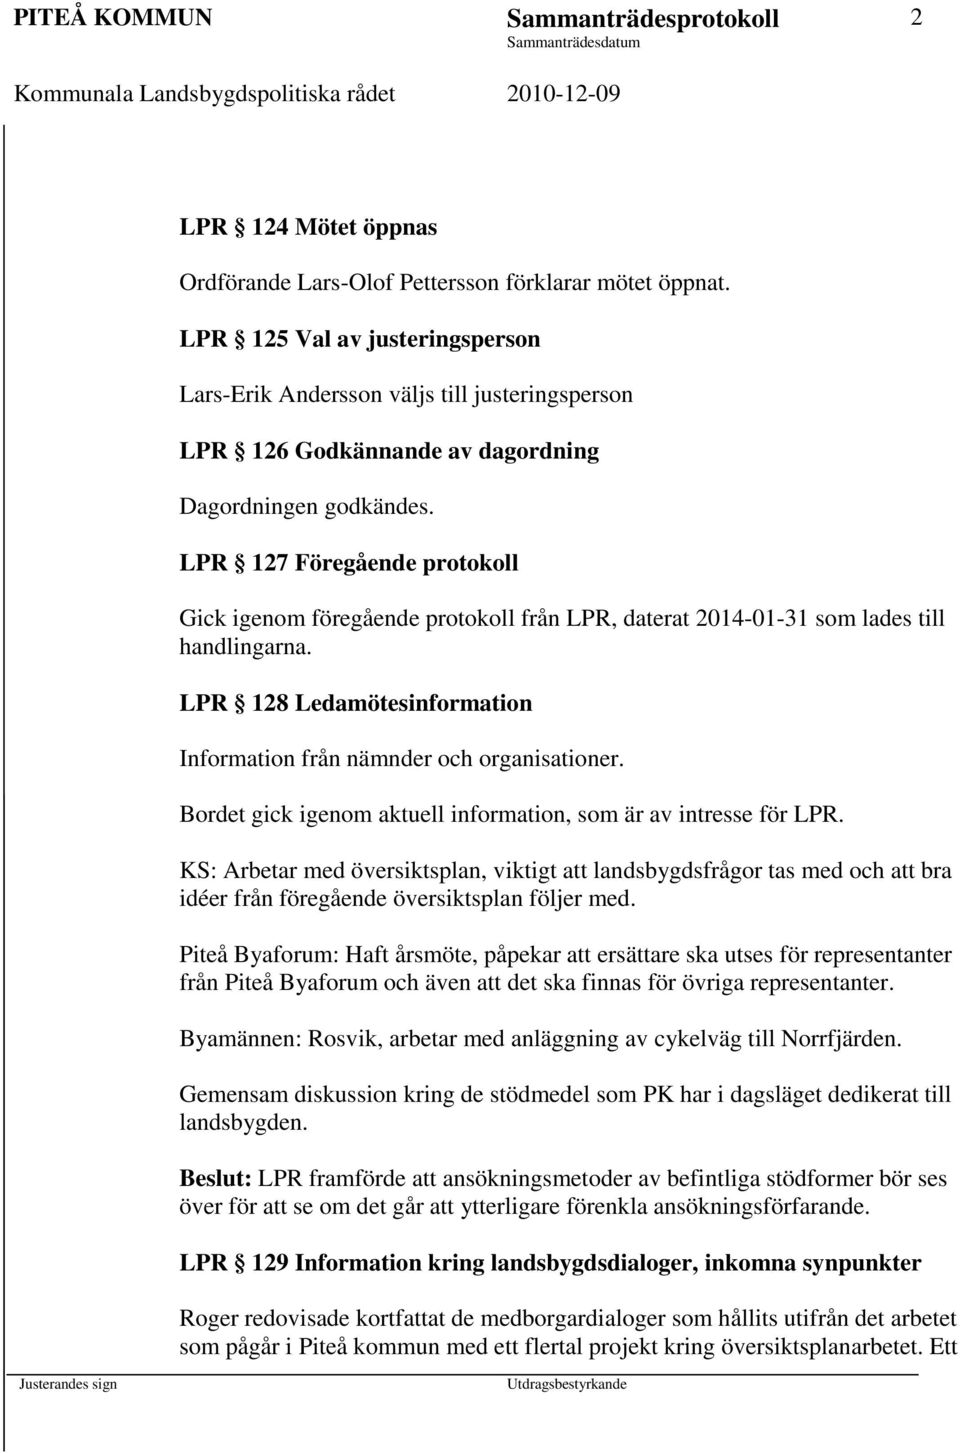 LPR 127 Föregående protokoll Gick igenom föregående protokoll från LPR, daterat 2014-01-31 som lades till handlingarna. LPR 128 Ledamötesinformation Information från nämnder och organisationer.